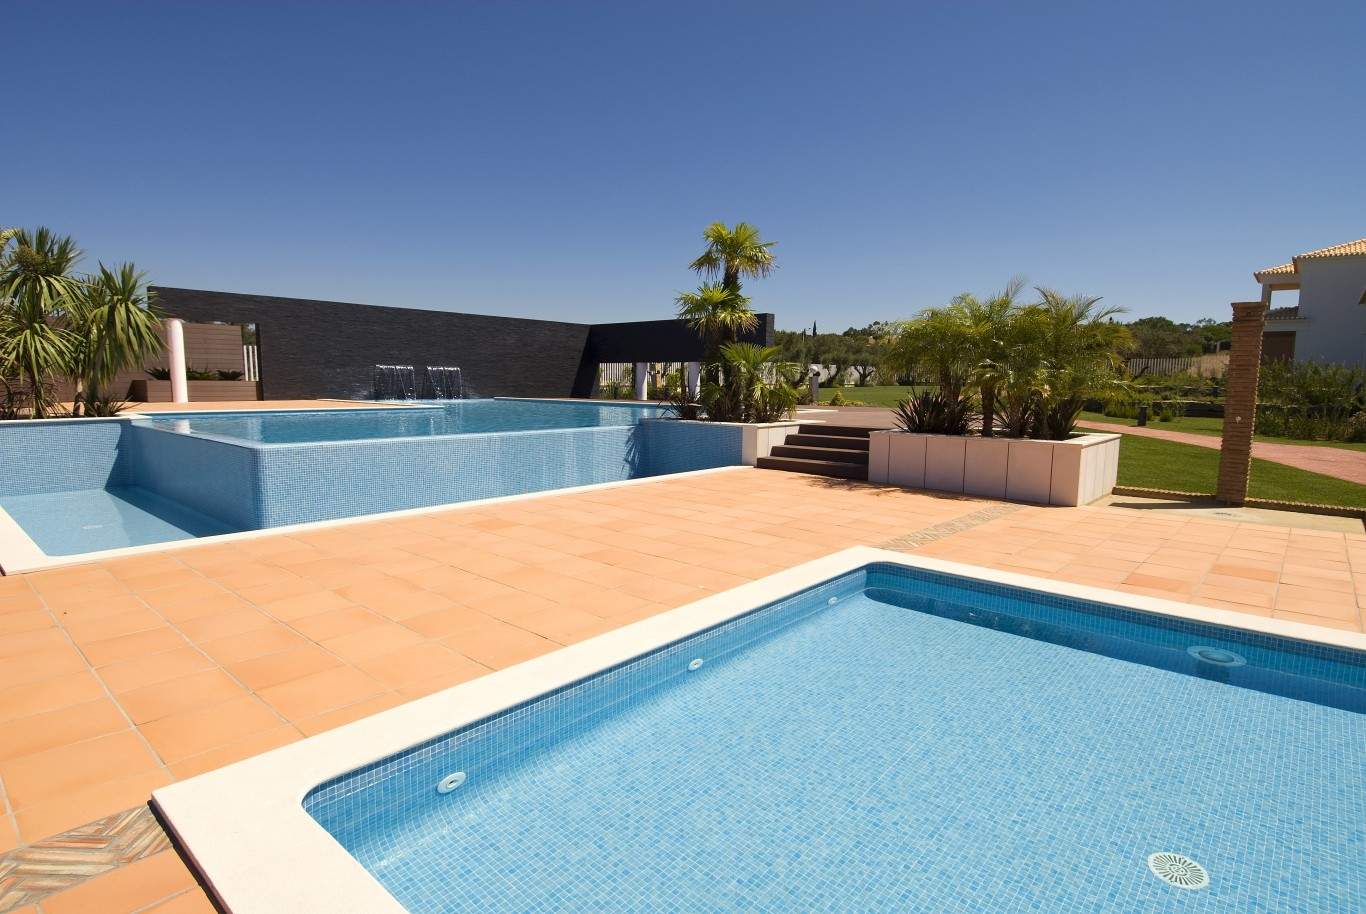 Venda de moradia nova, piscina, golfe de Vilamoura, Algarve, Portugal_54168